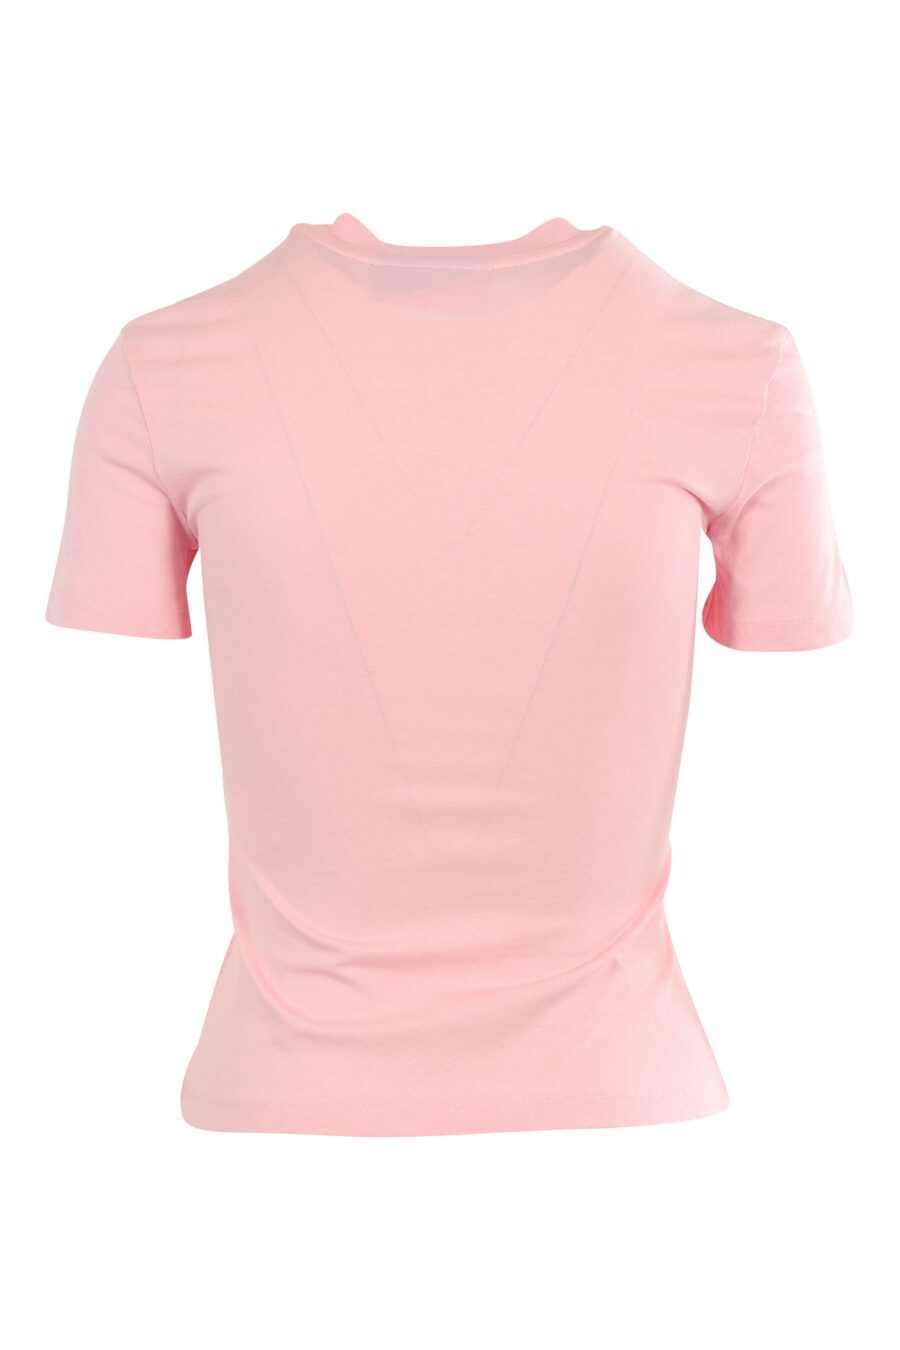 T-shirt cor-de-rosa com olho e estrela - 8052672416841 2